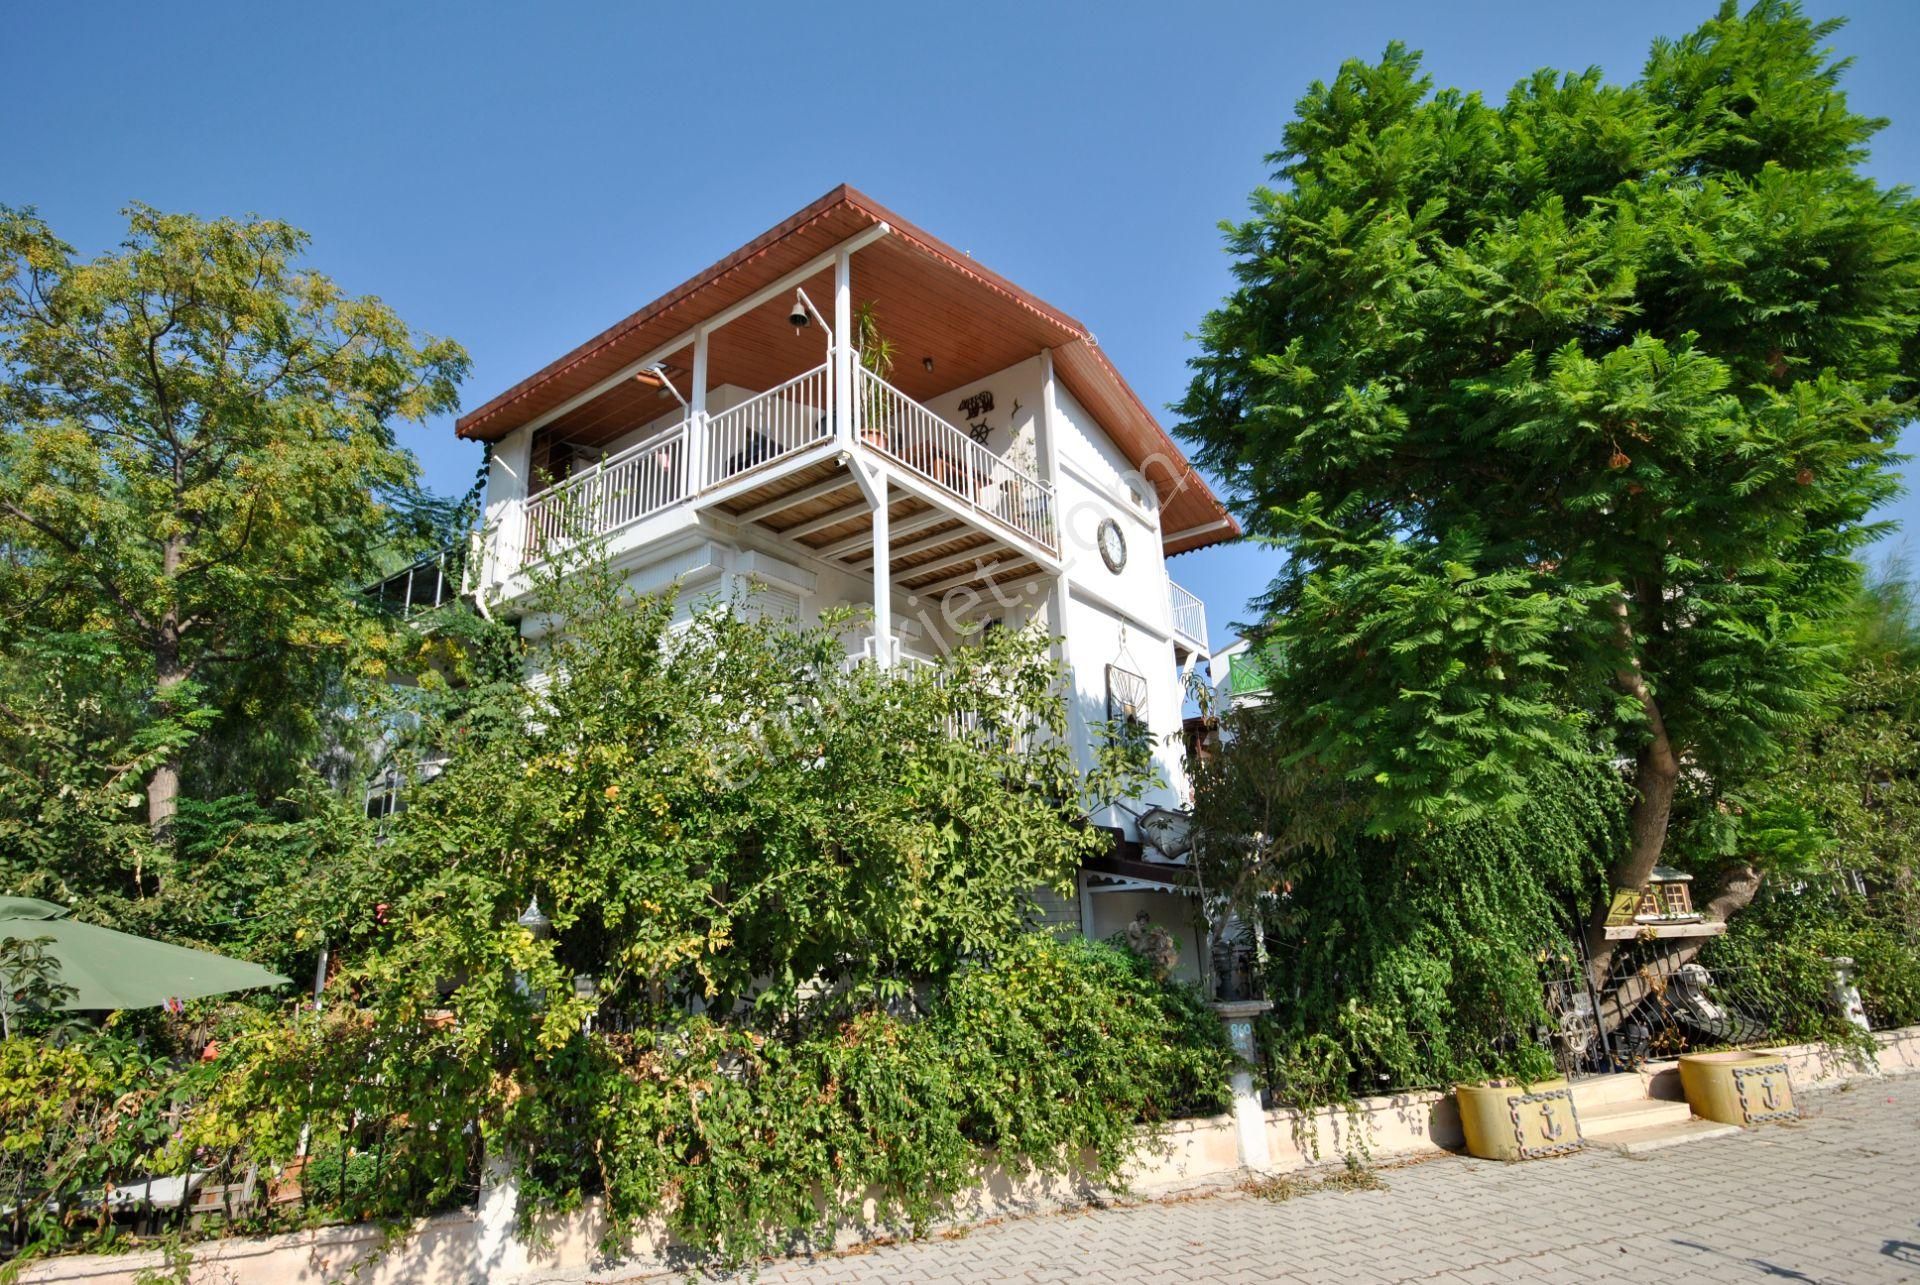 Kemer Merkez Satılık Villa  Kemer Merkezde Denize 800 m Uzaklıkta Tripleks Satılık İkiz Ev